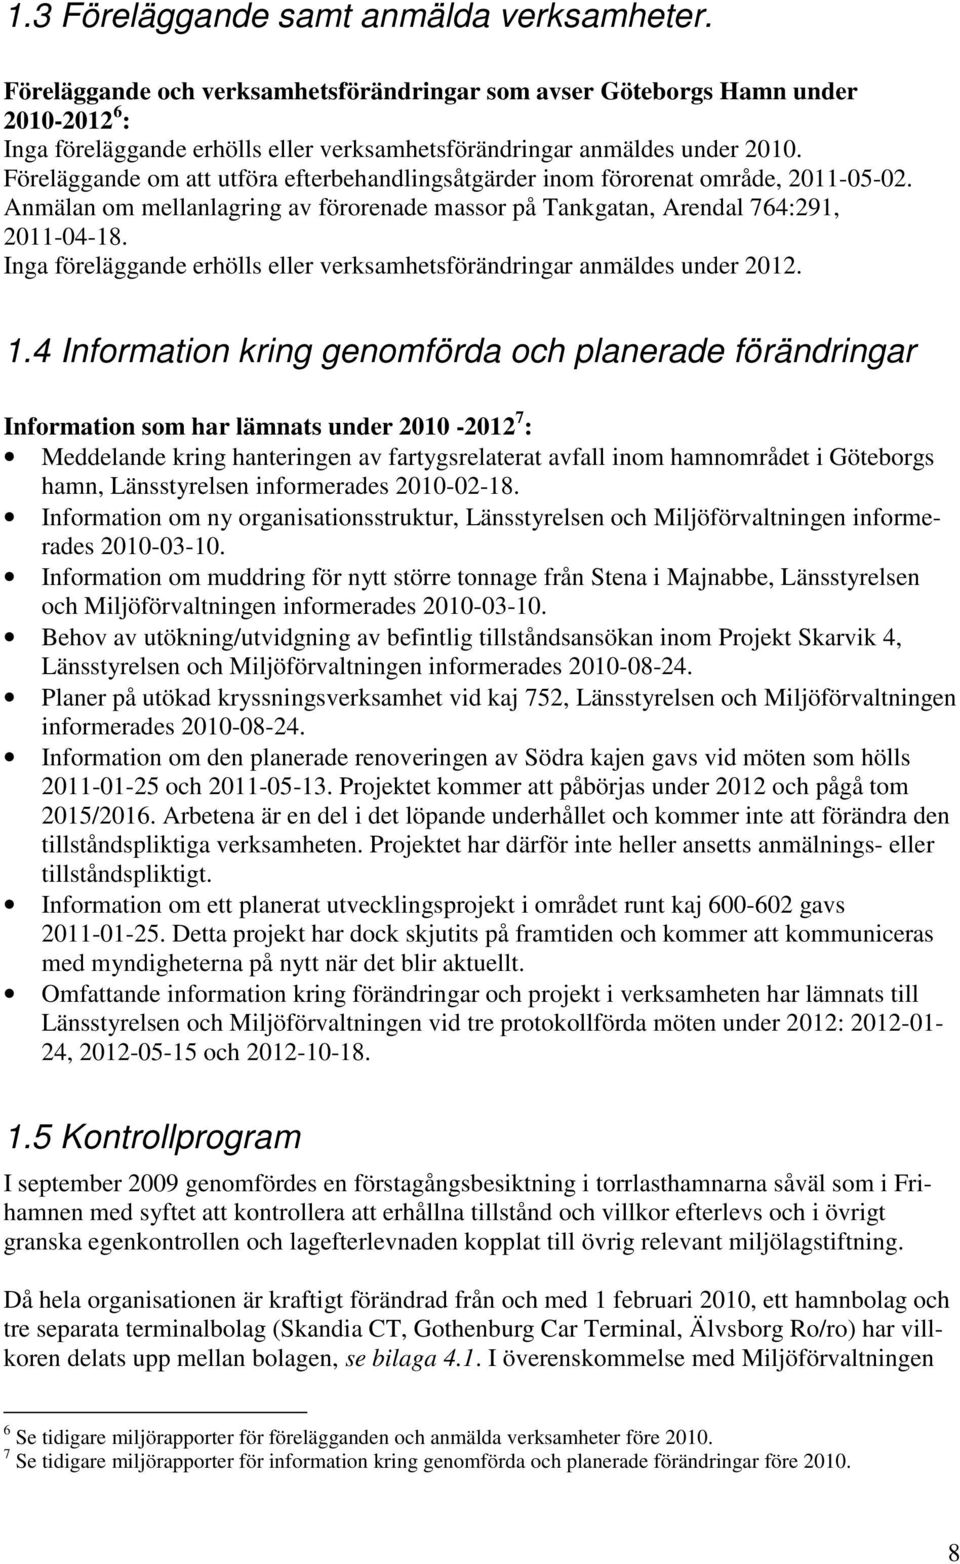 Föreläggande om att utföra efterbehandlingsåtgärder inom förorenat område, 2011-05-02. Anmälan om mellanlagring av förorenade massor på Tankgatan, Arendal 764:291, 2011-04-18.